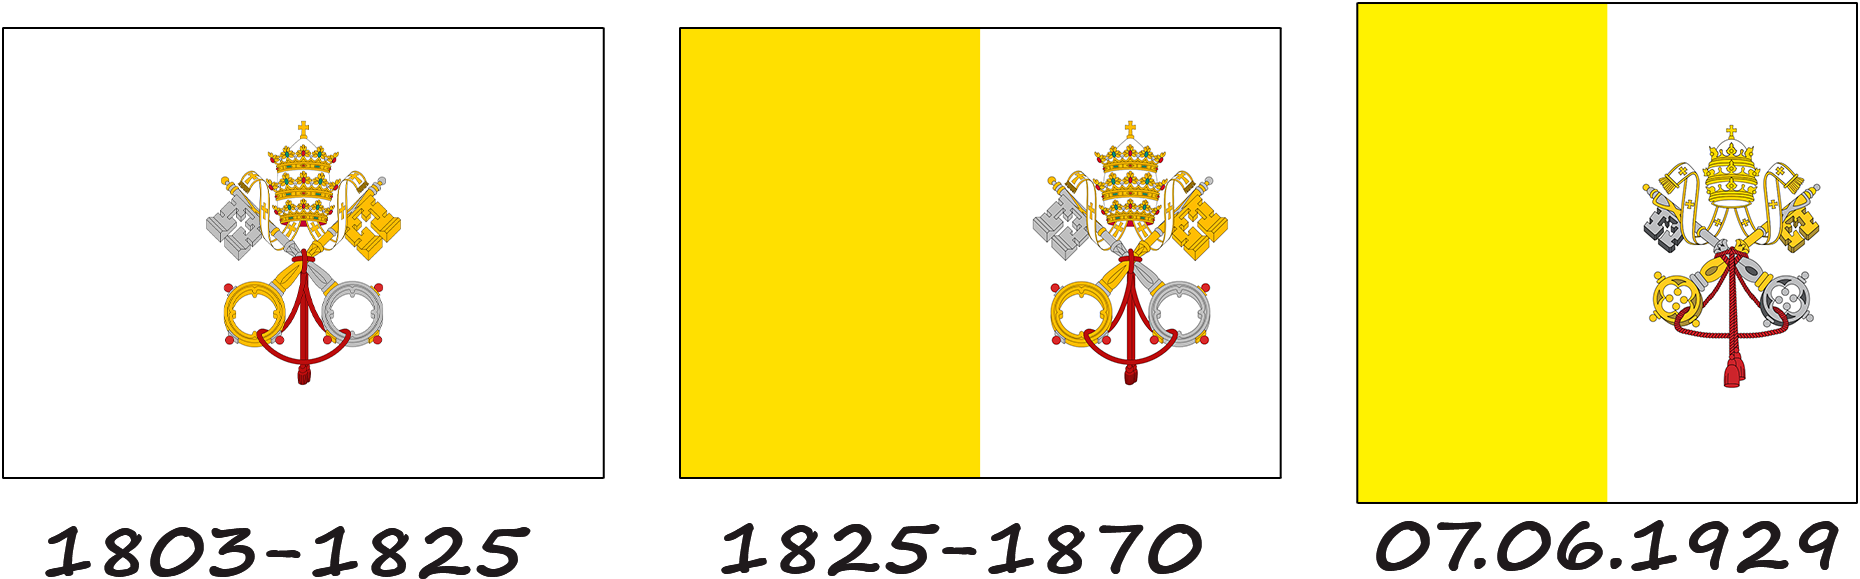 Historia de la bandera vaticana